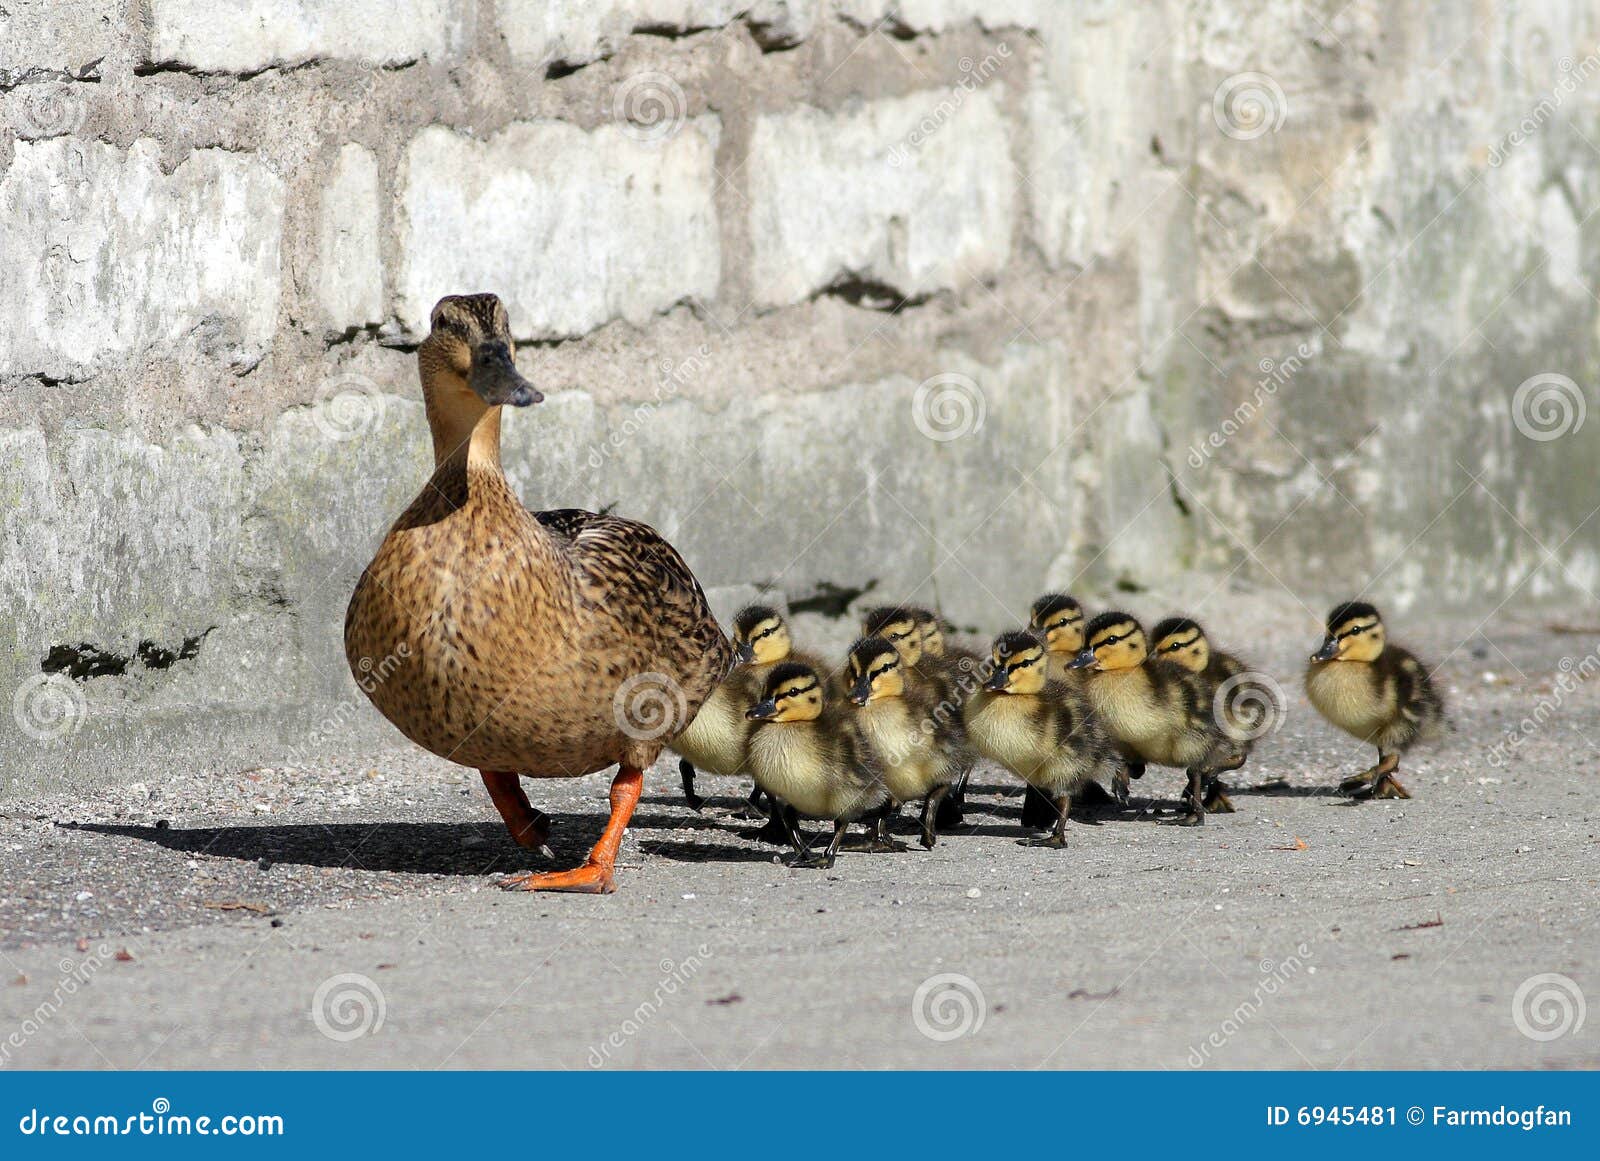 duck-family-6945481.jpg